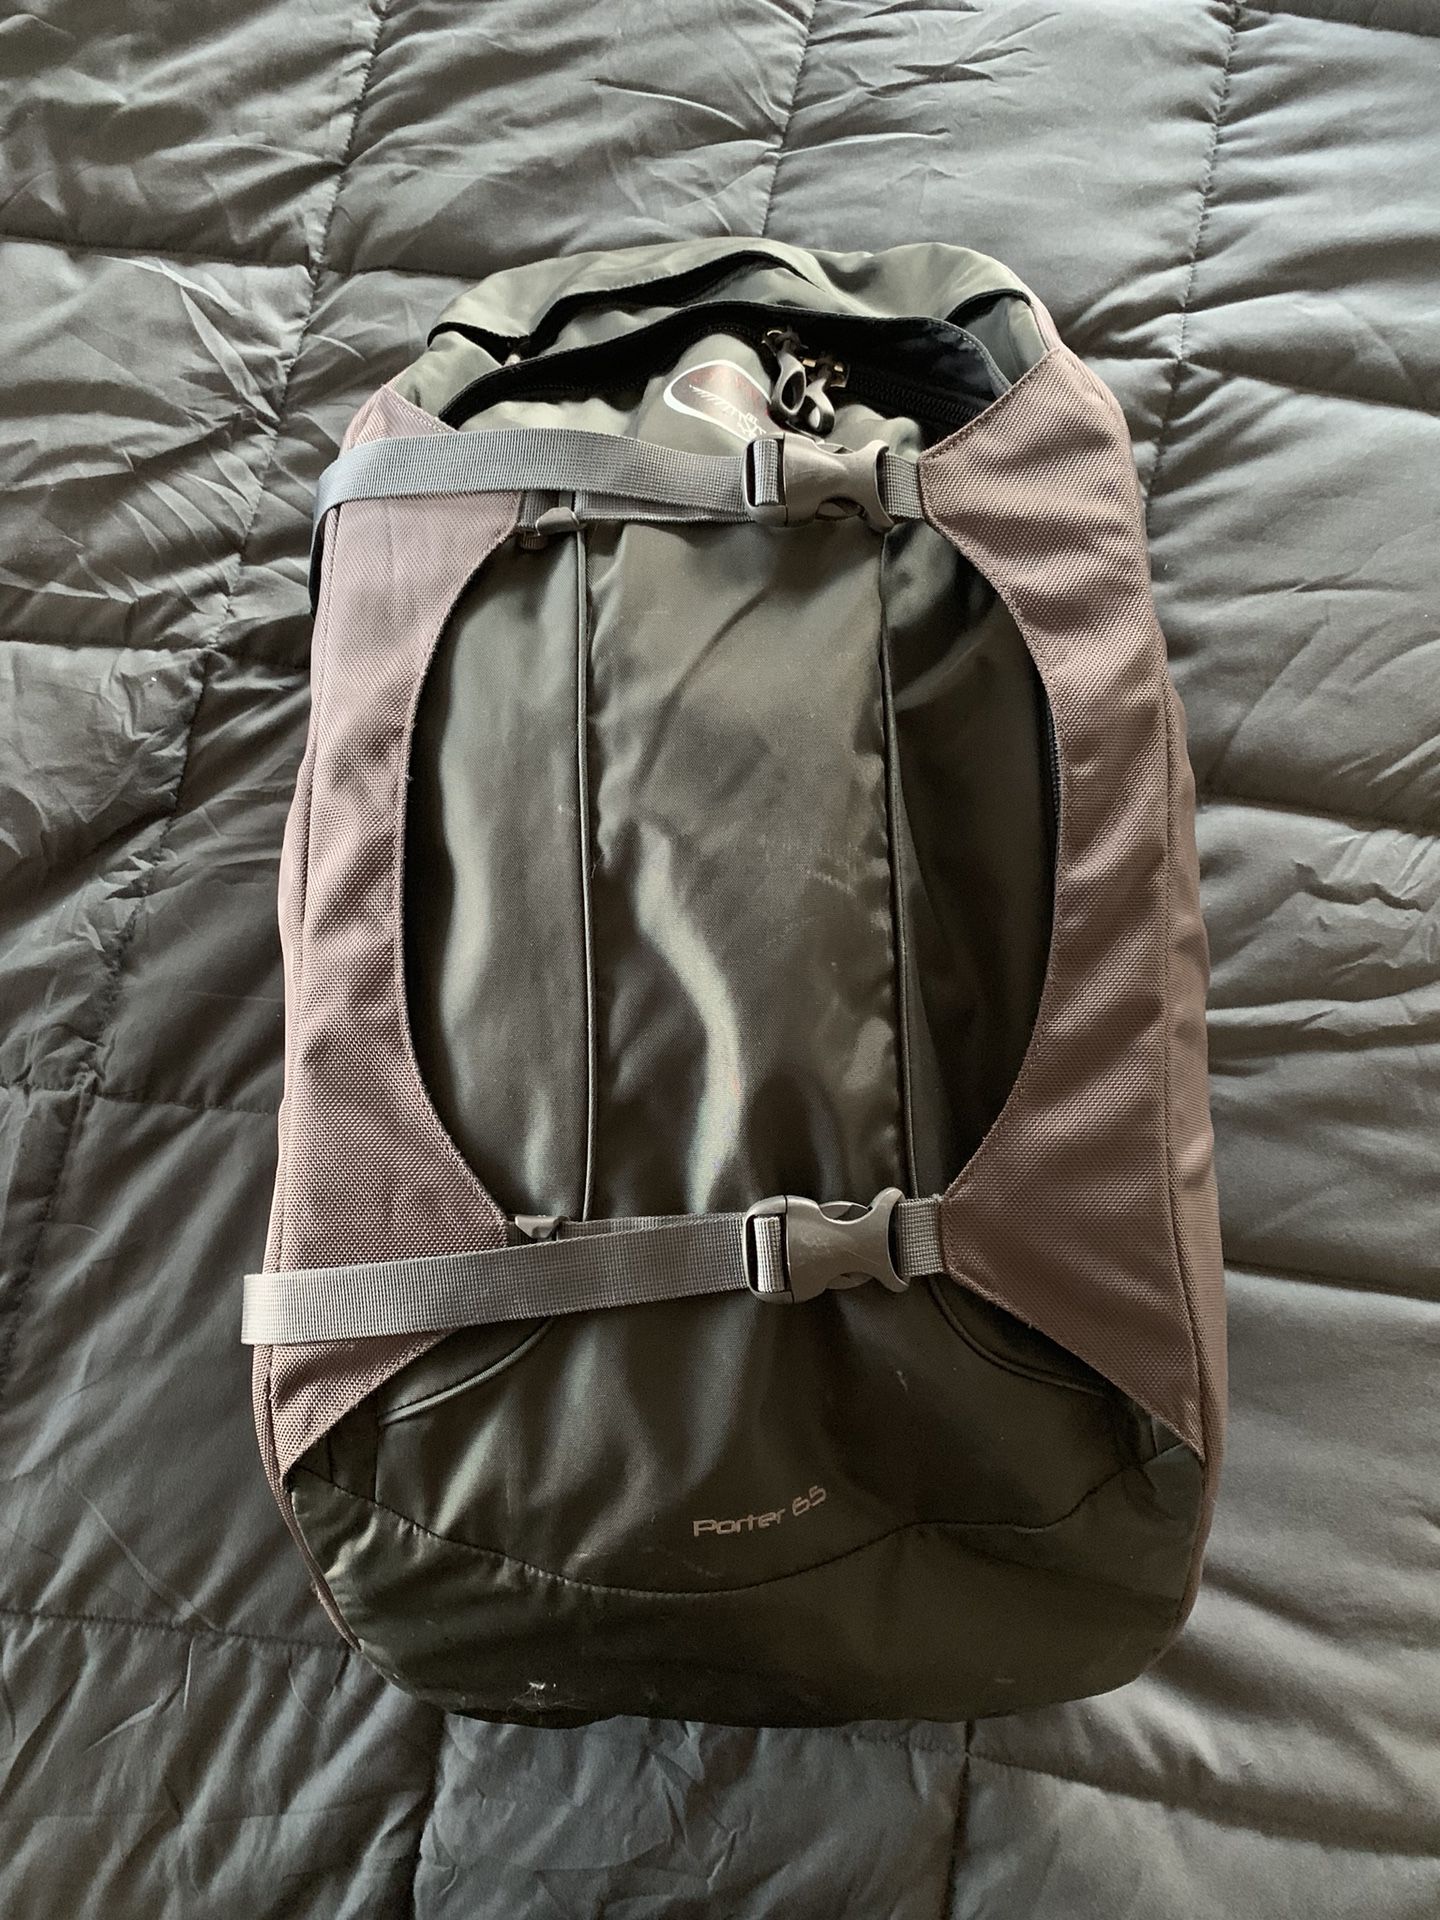 Osprey Porter 65L Travel backpack